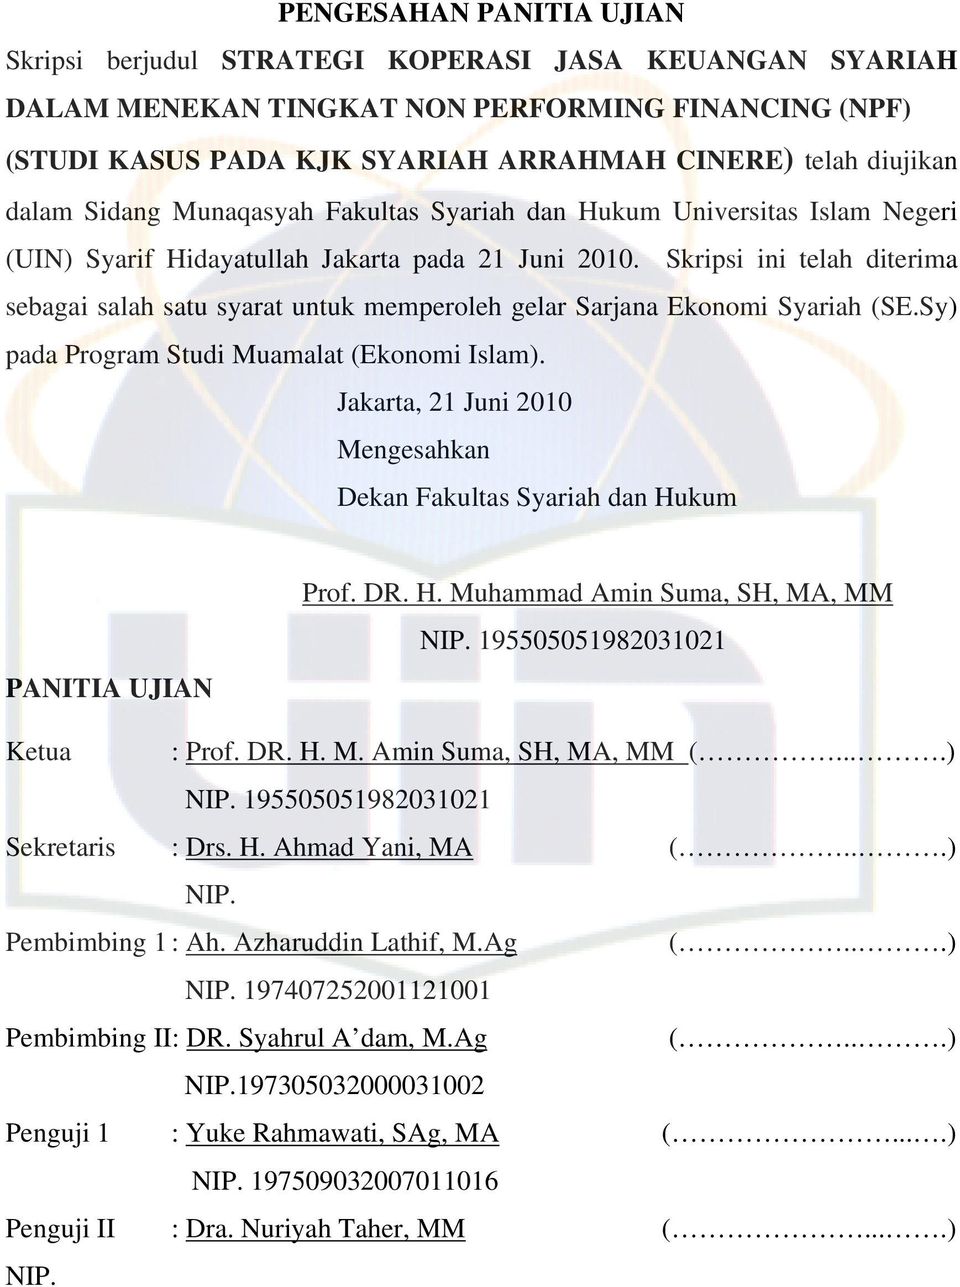 Skripsi ini telah diterima sebagai salah satu syarat untuk memperoleh gelar Sarjana Ekonomi Syariah (SE.Sy) pada Program Studi Muamalat (Ekonomi Islam).